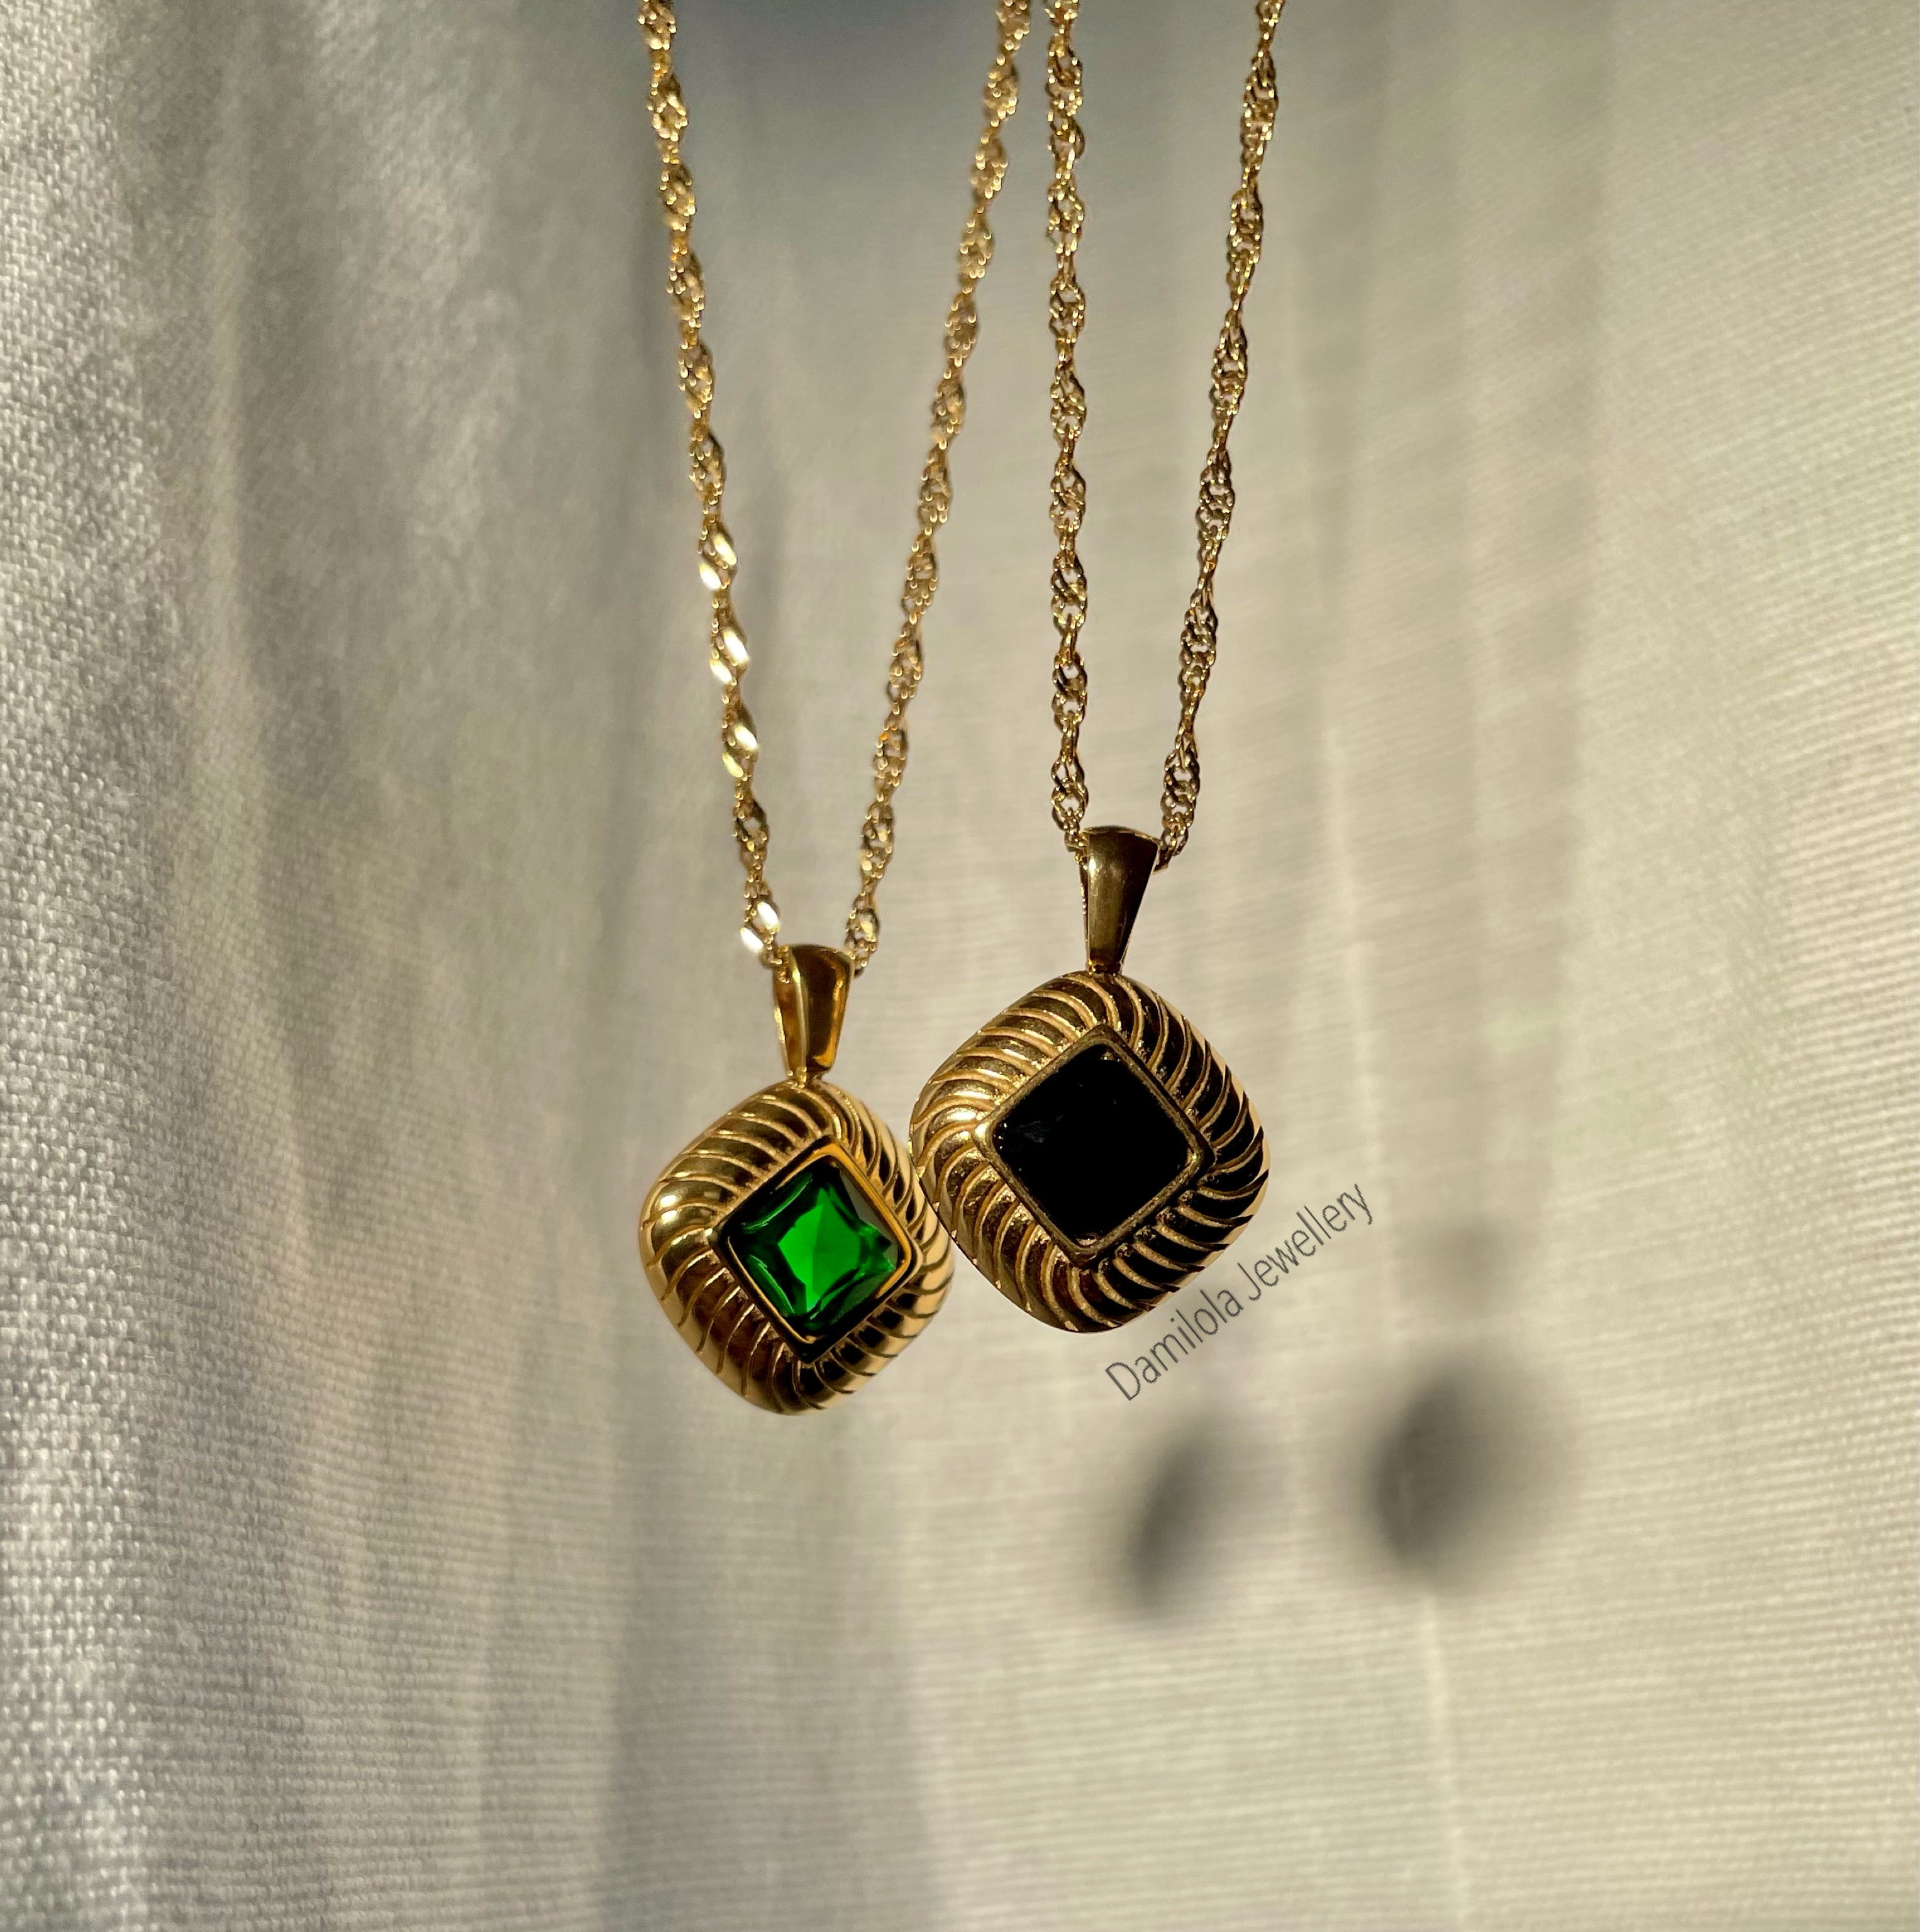 Aja ‘Emerald’ Pendant Necklace